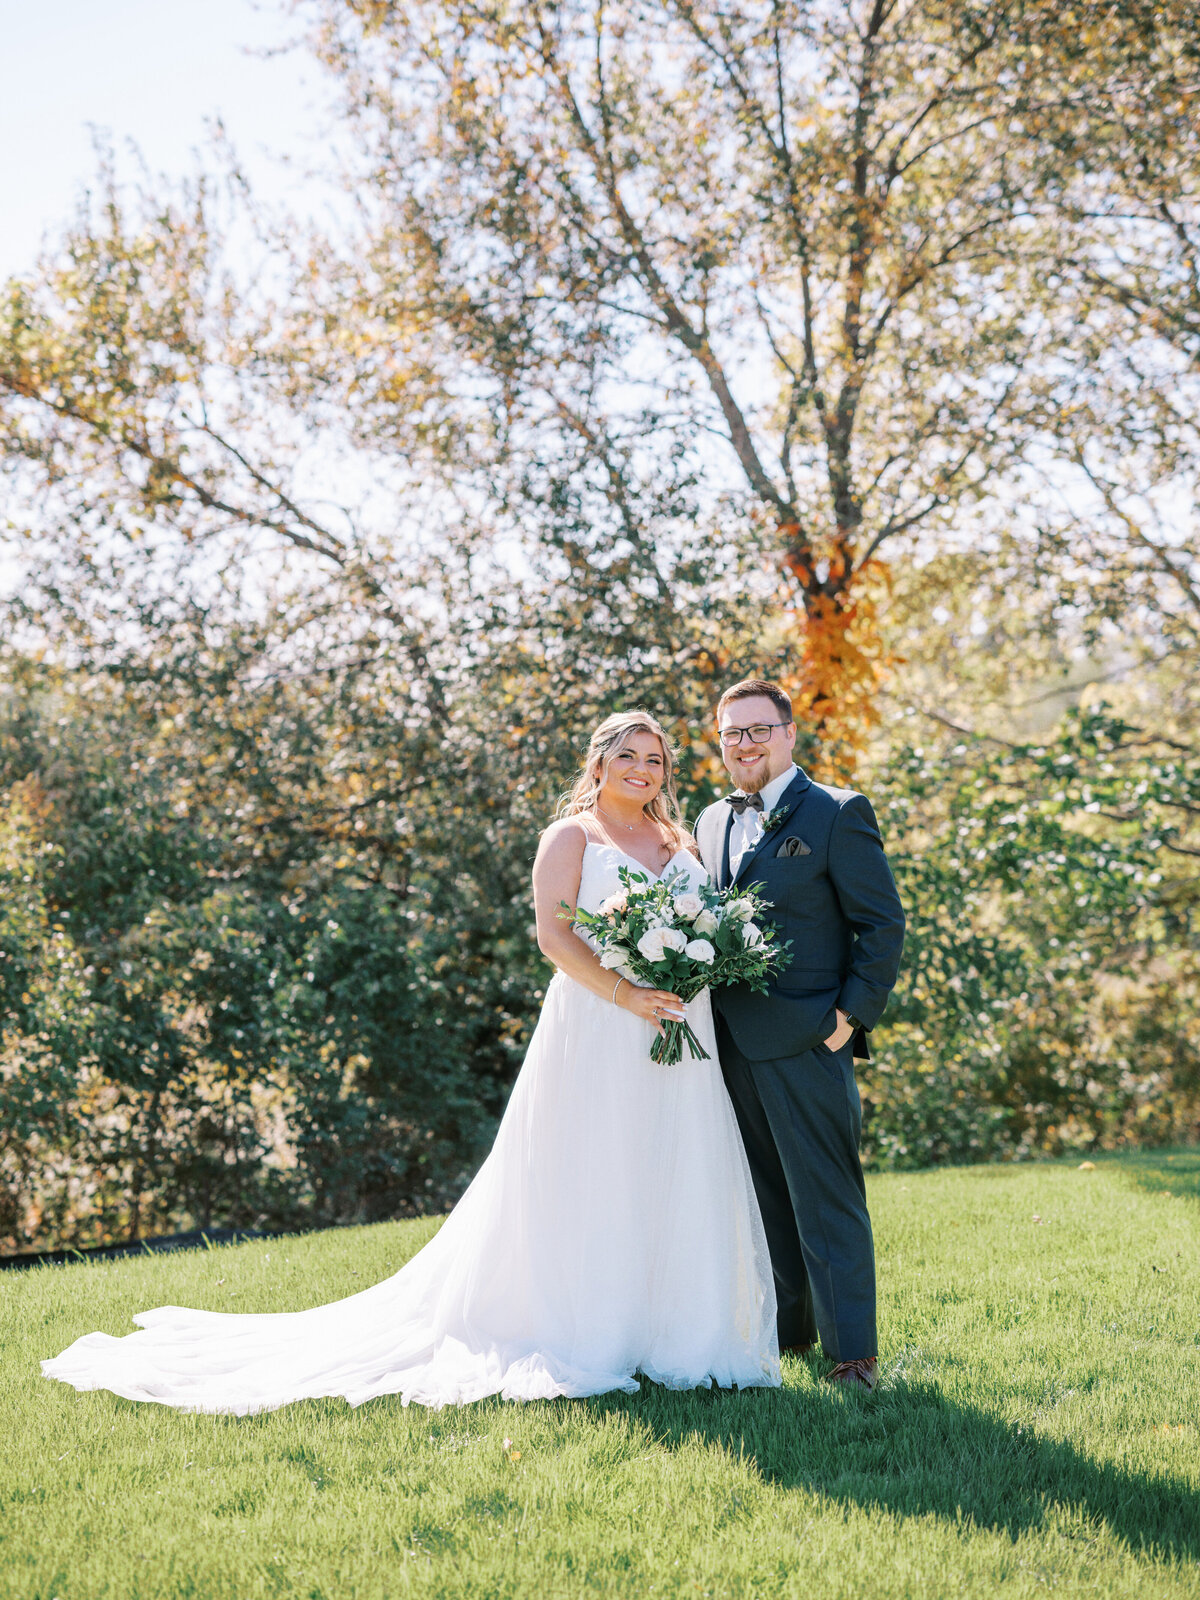 Allie+Scott_wedding_bride+groom-0052